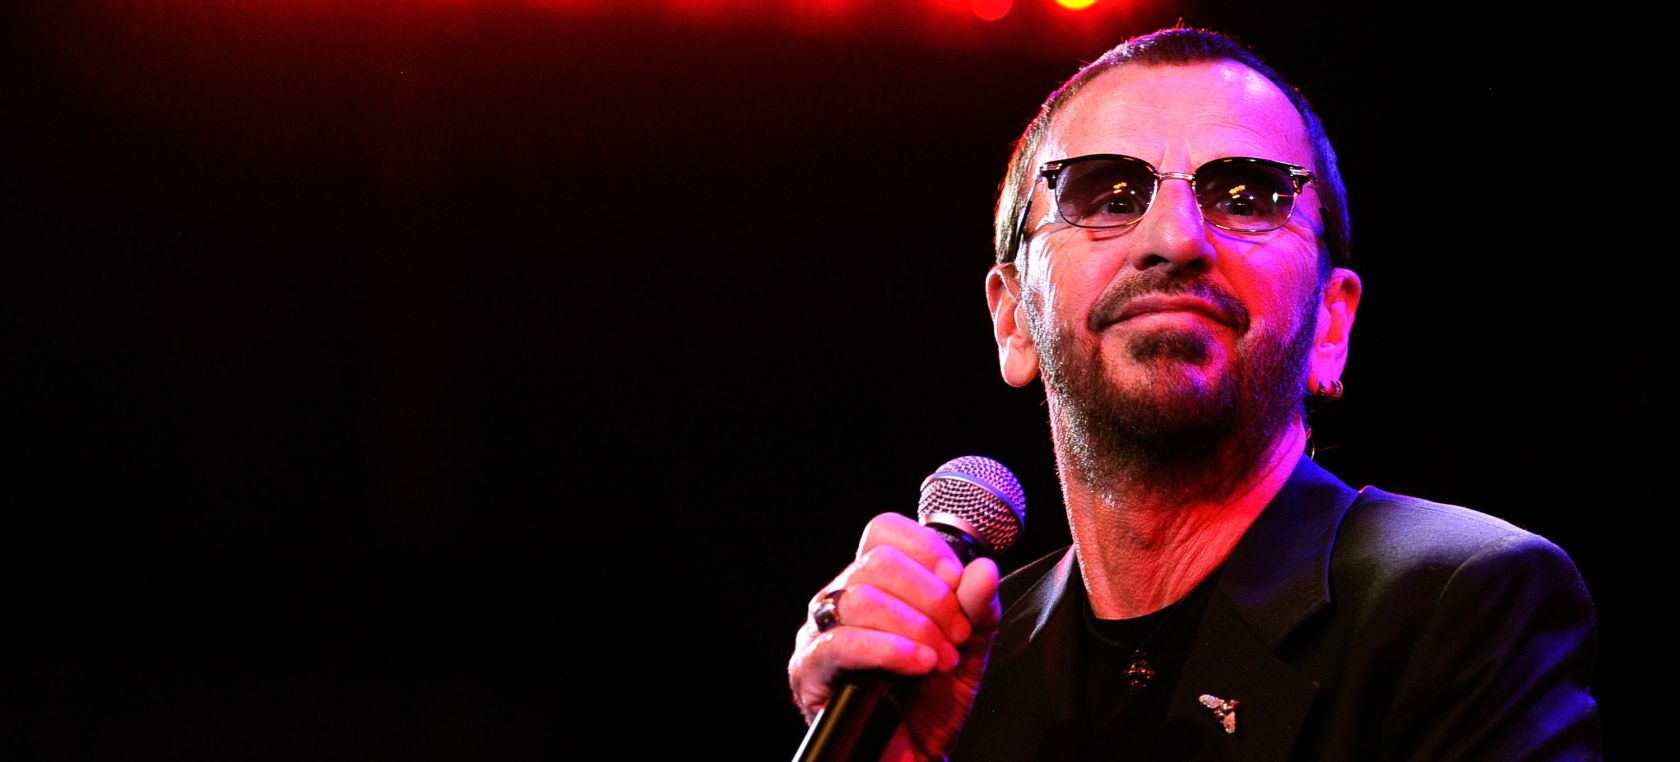 El arrebato de Ringo Starr: “No más cartas de fans… serán arrojadas a la basura”